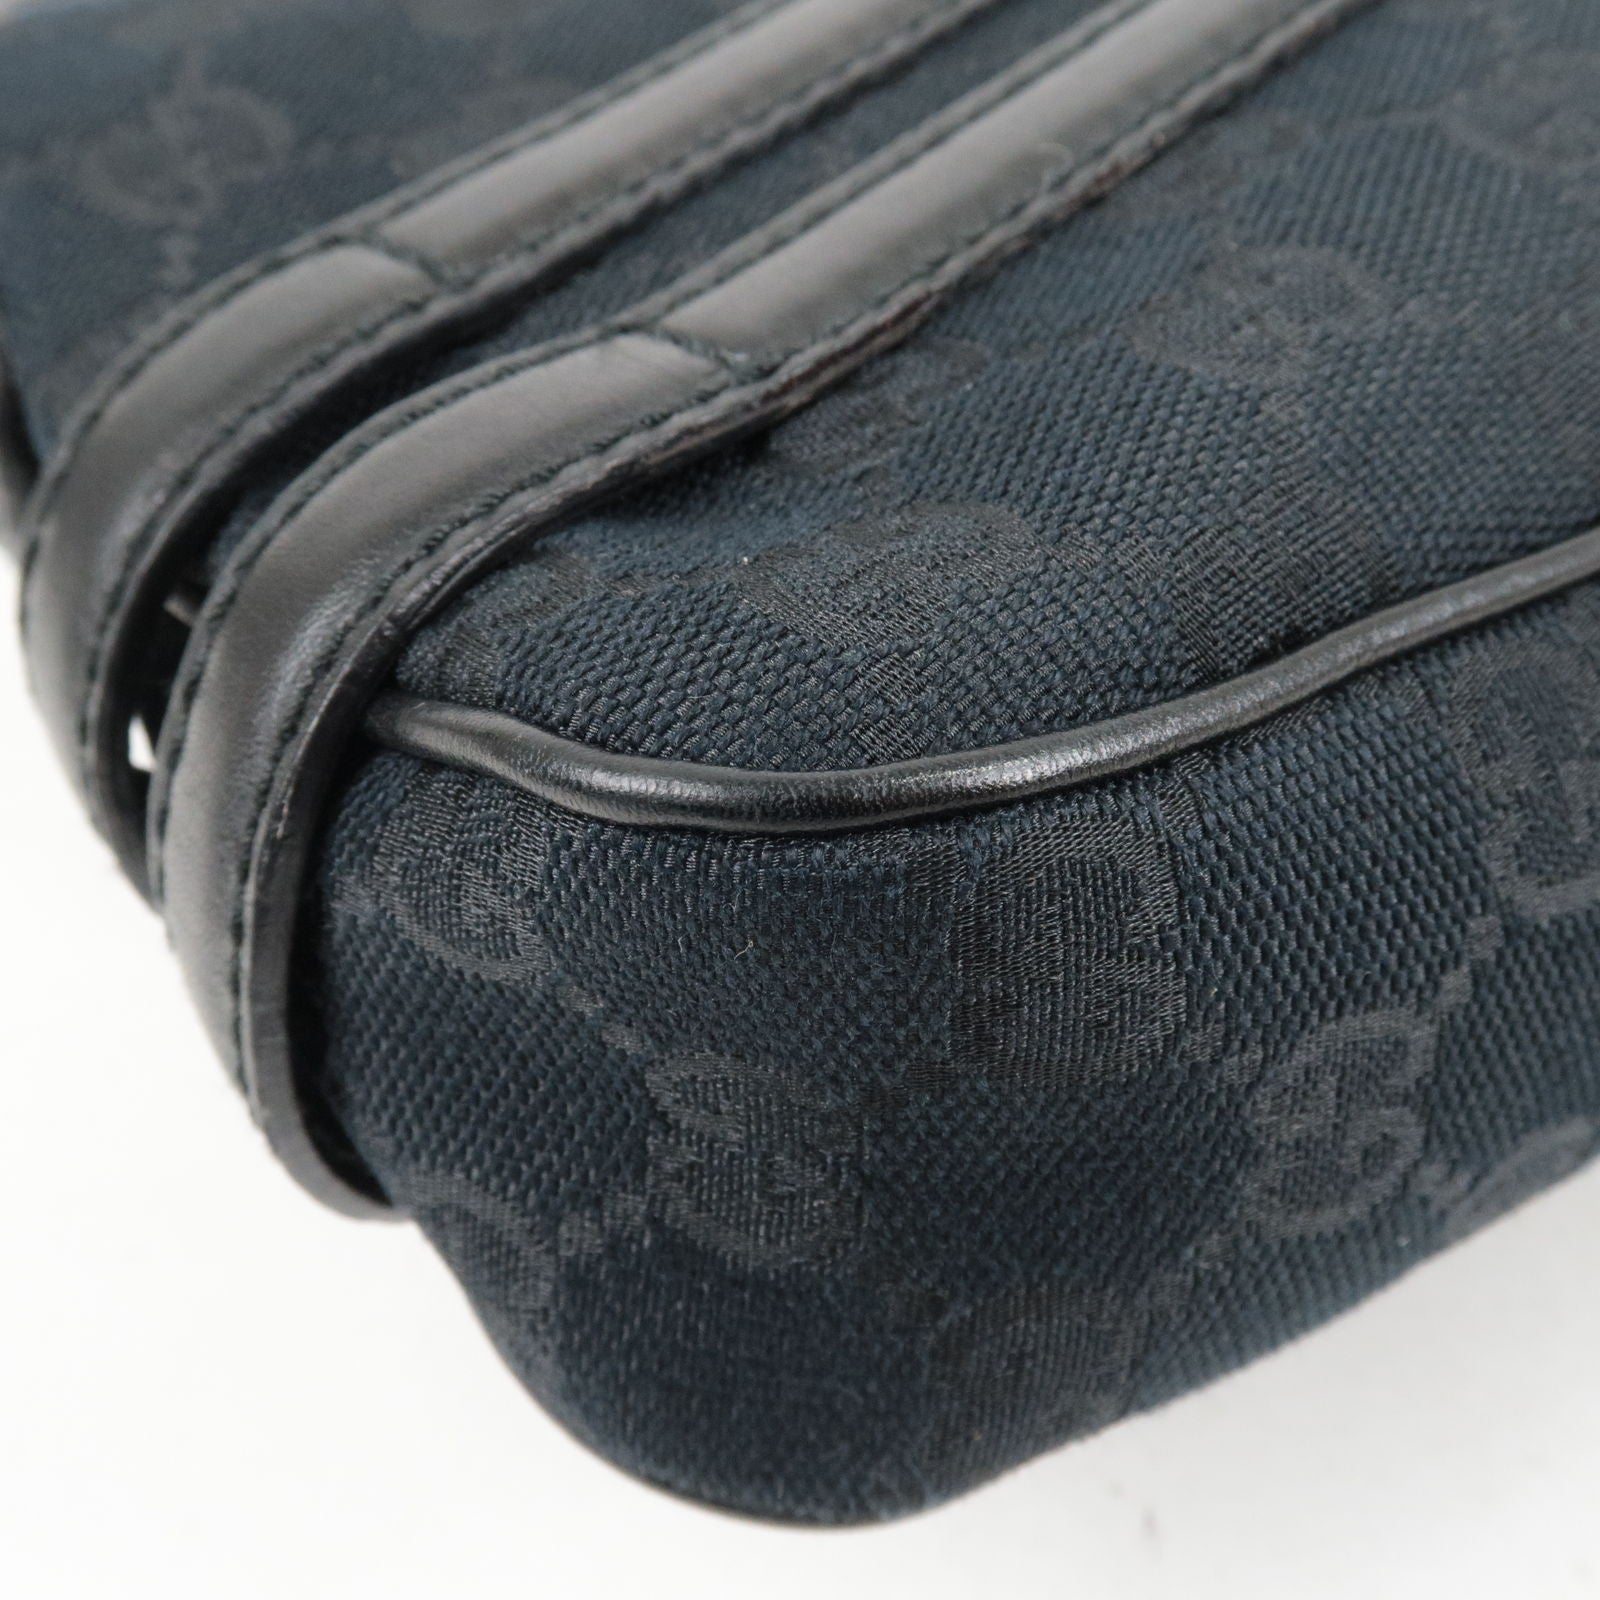 Vintage Gucci Web GG Monogram Canvas Leather Bowler Shoulder Bag